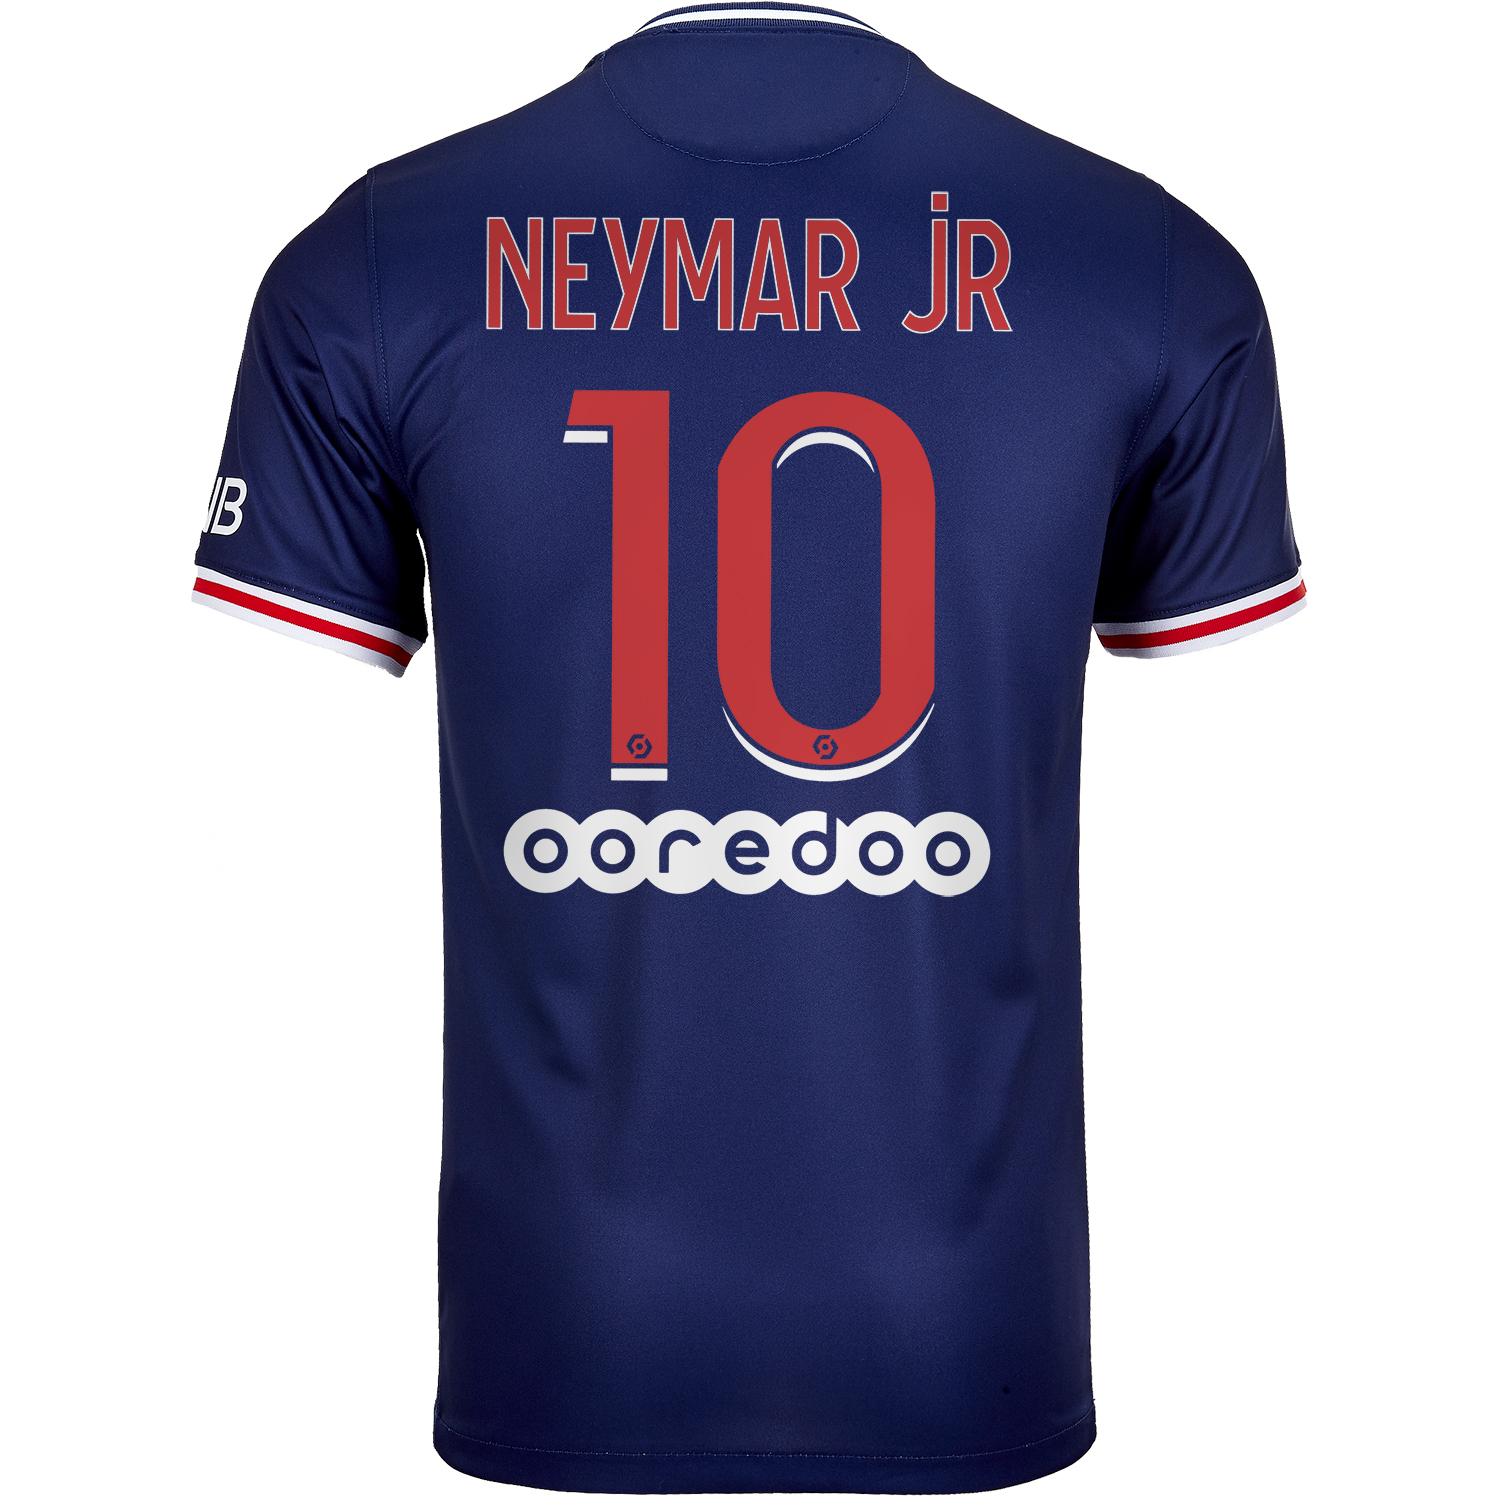 2020/21 Nike Neymar Jr PSG Home Jersey 